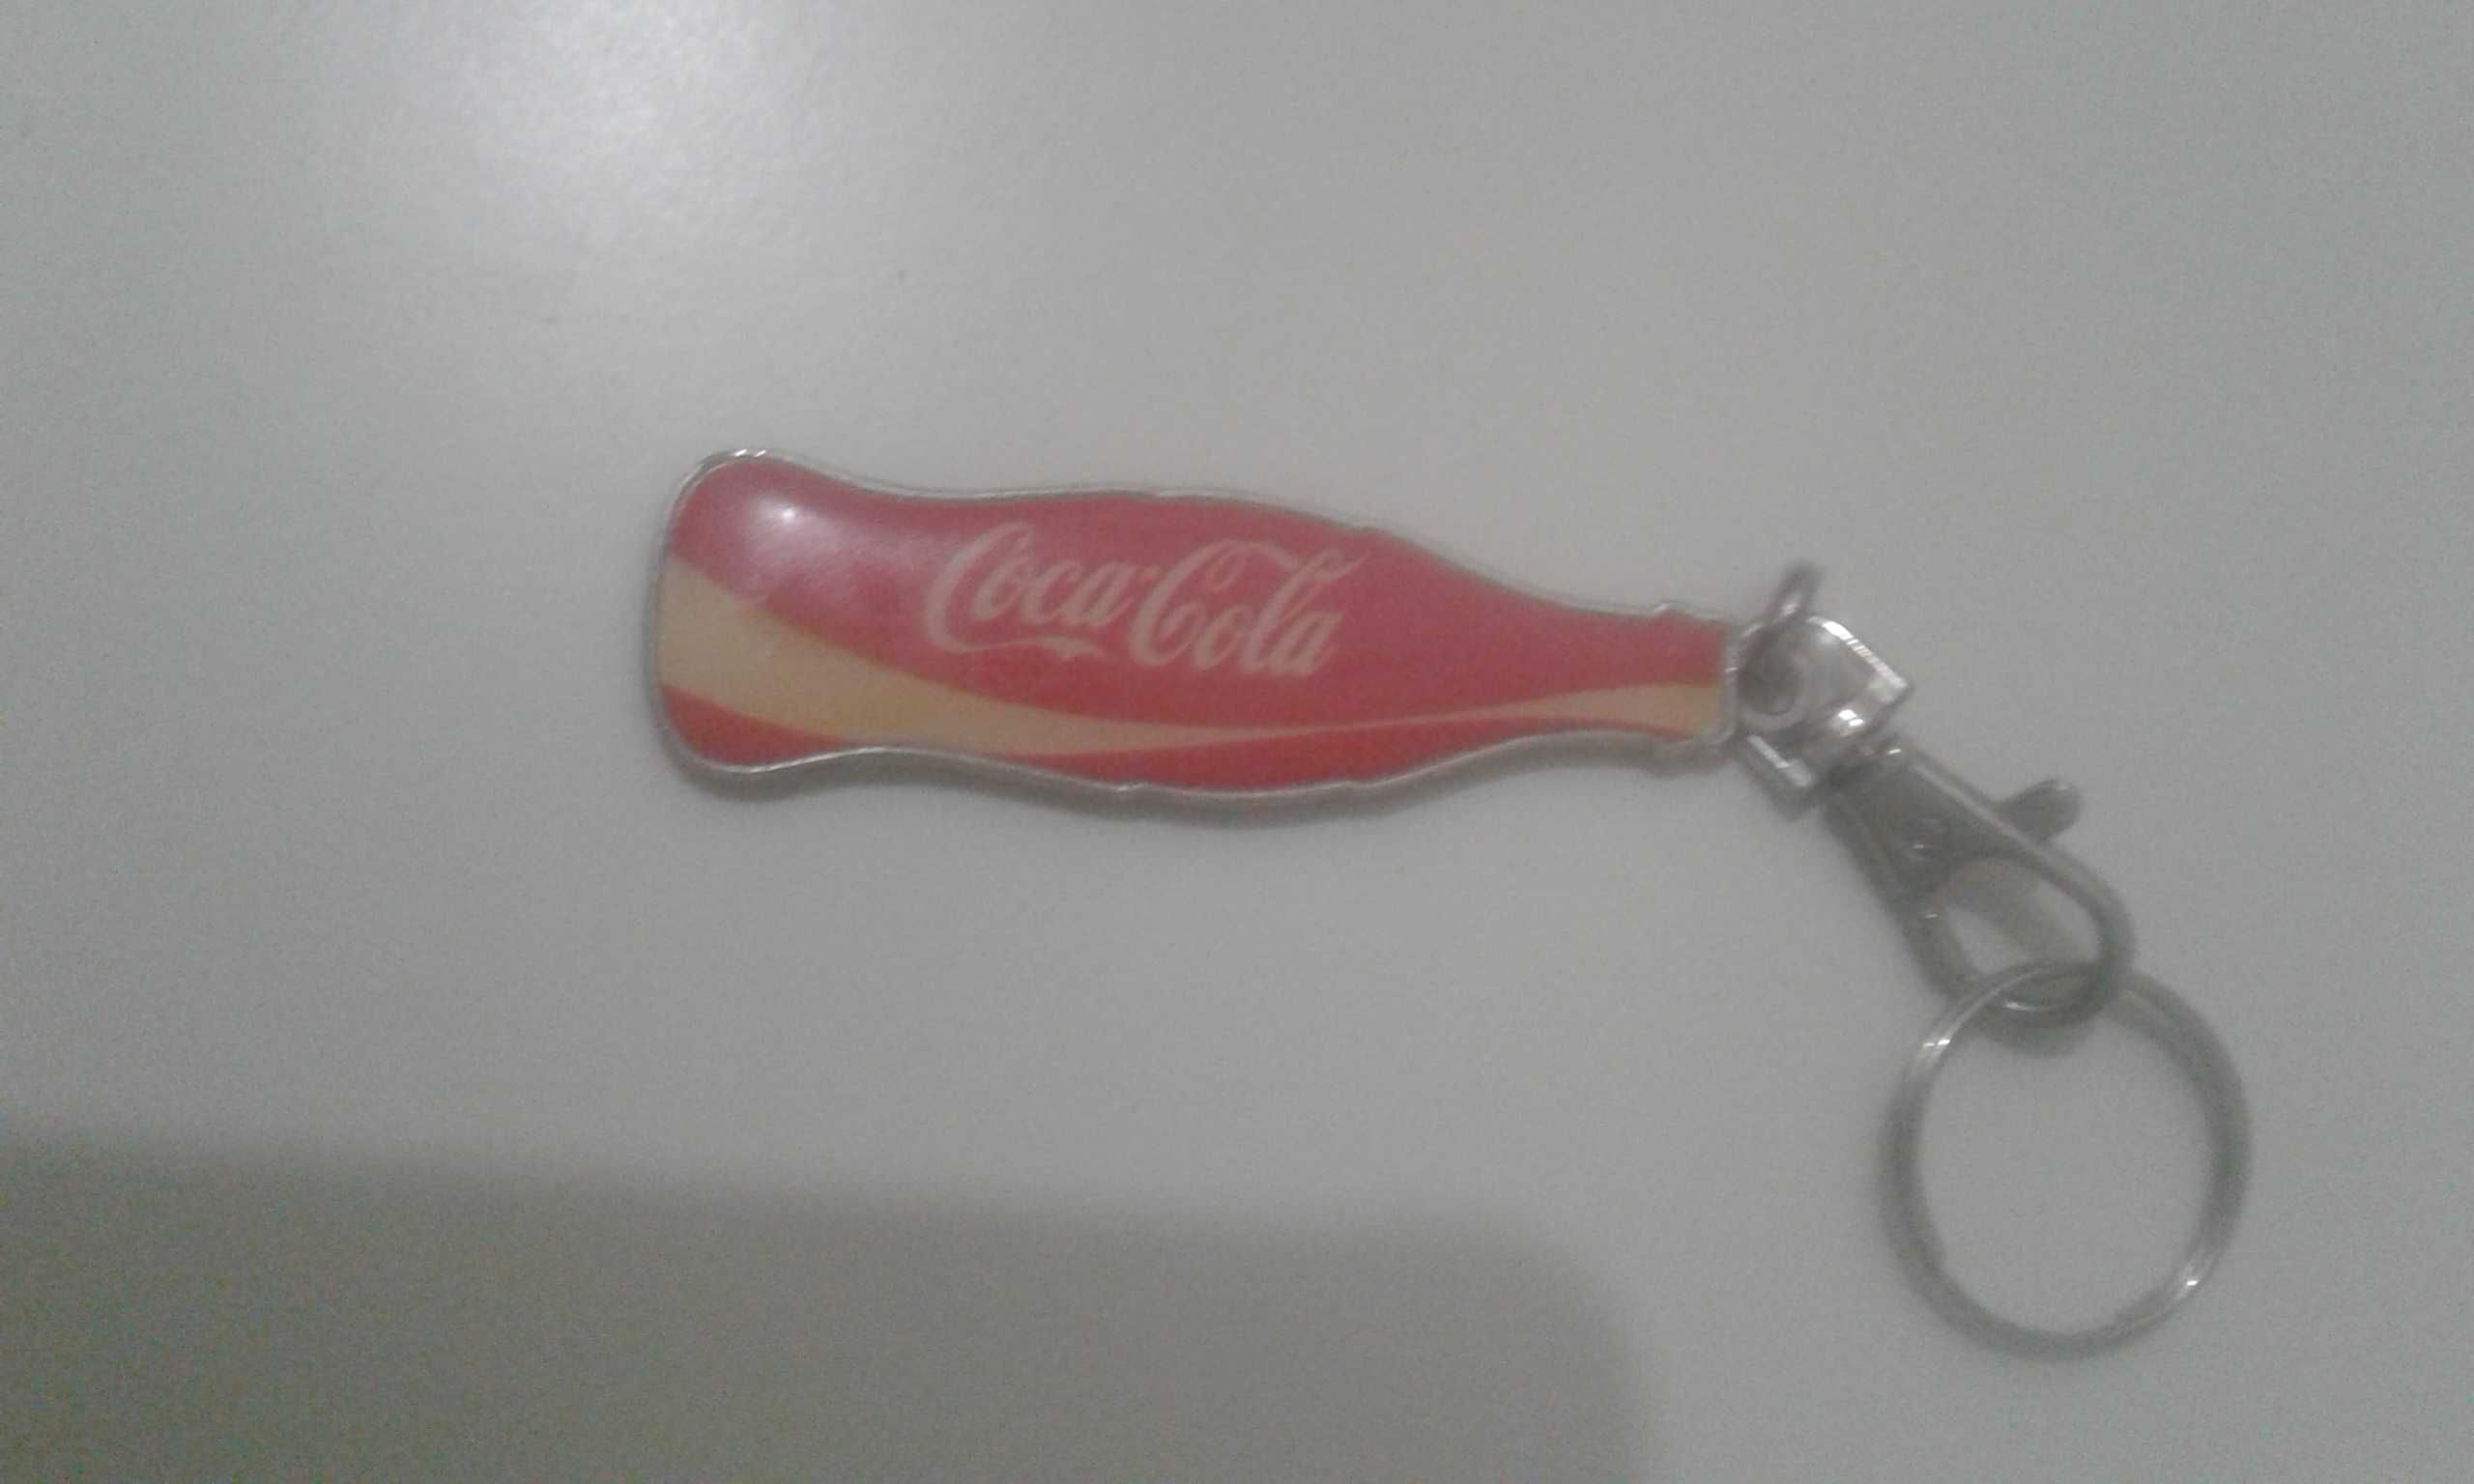 Porta chaves coca-cola